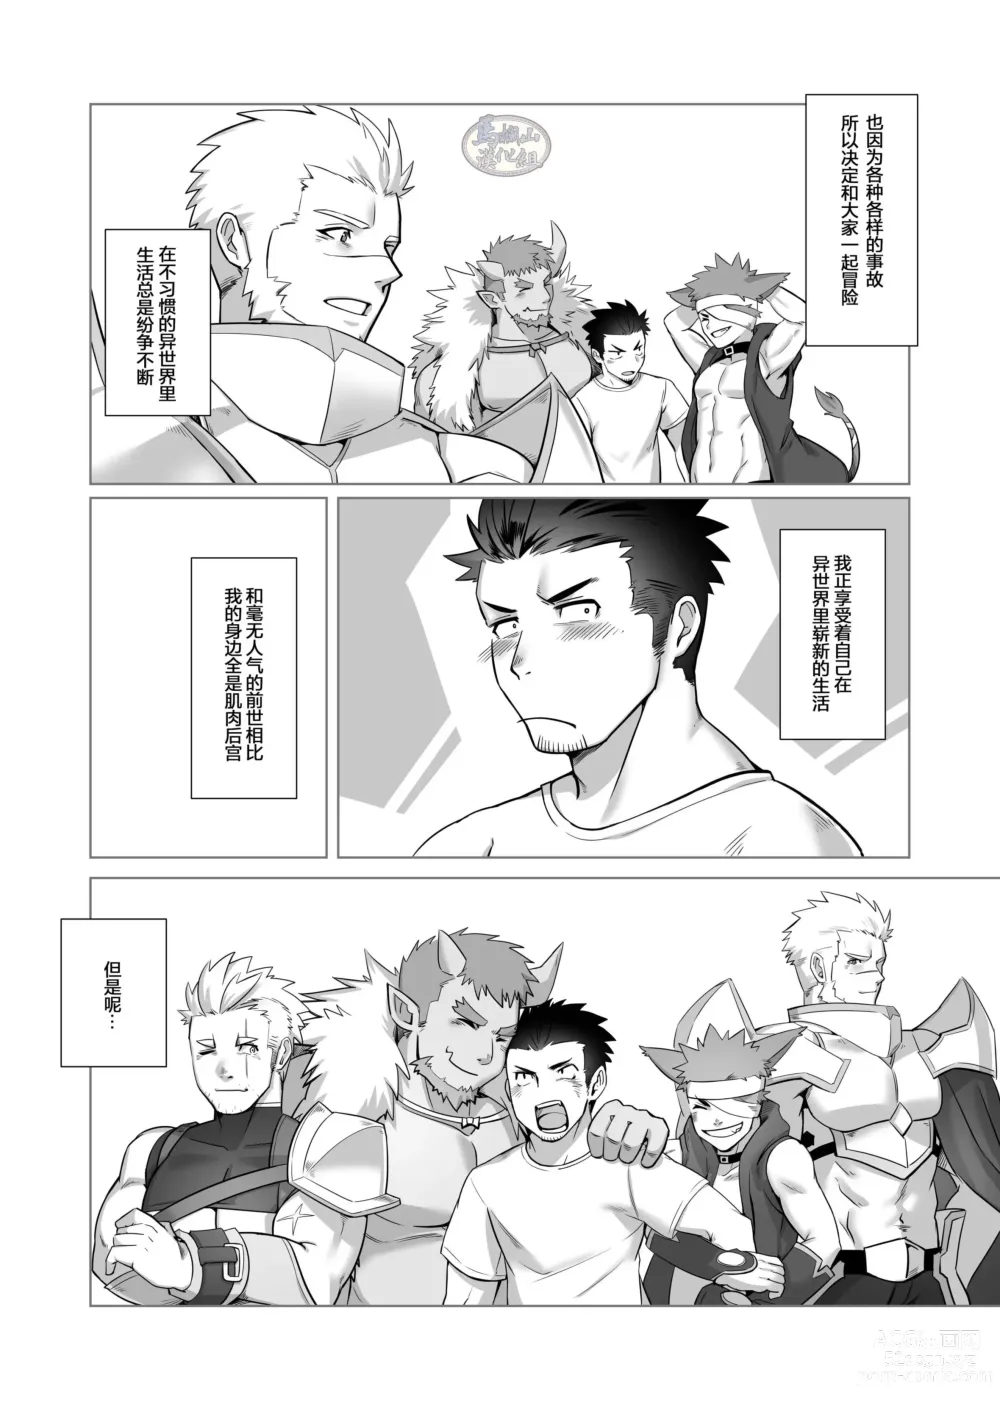 Page 10 of doujinshi 关于我在转生之后身边全是肌肉男的奇闻轶事